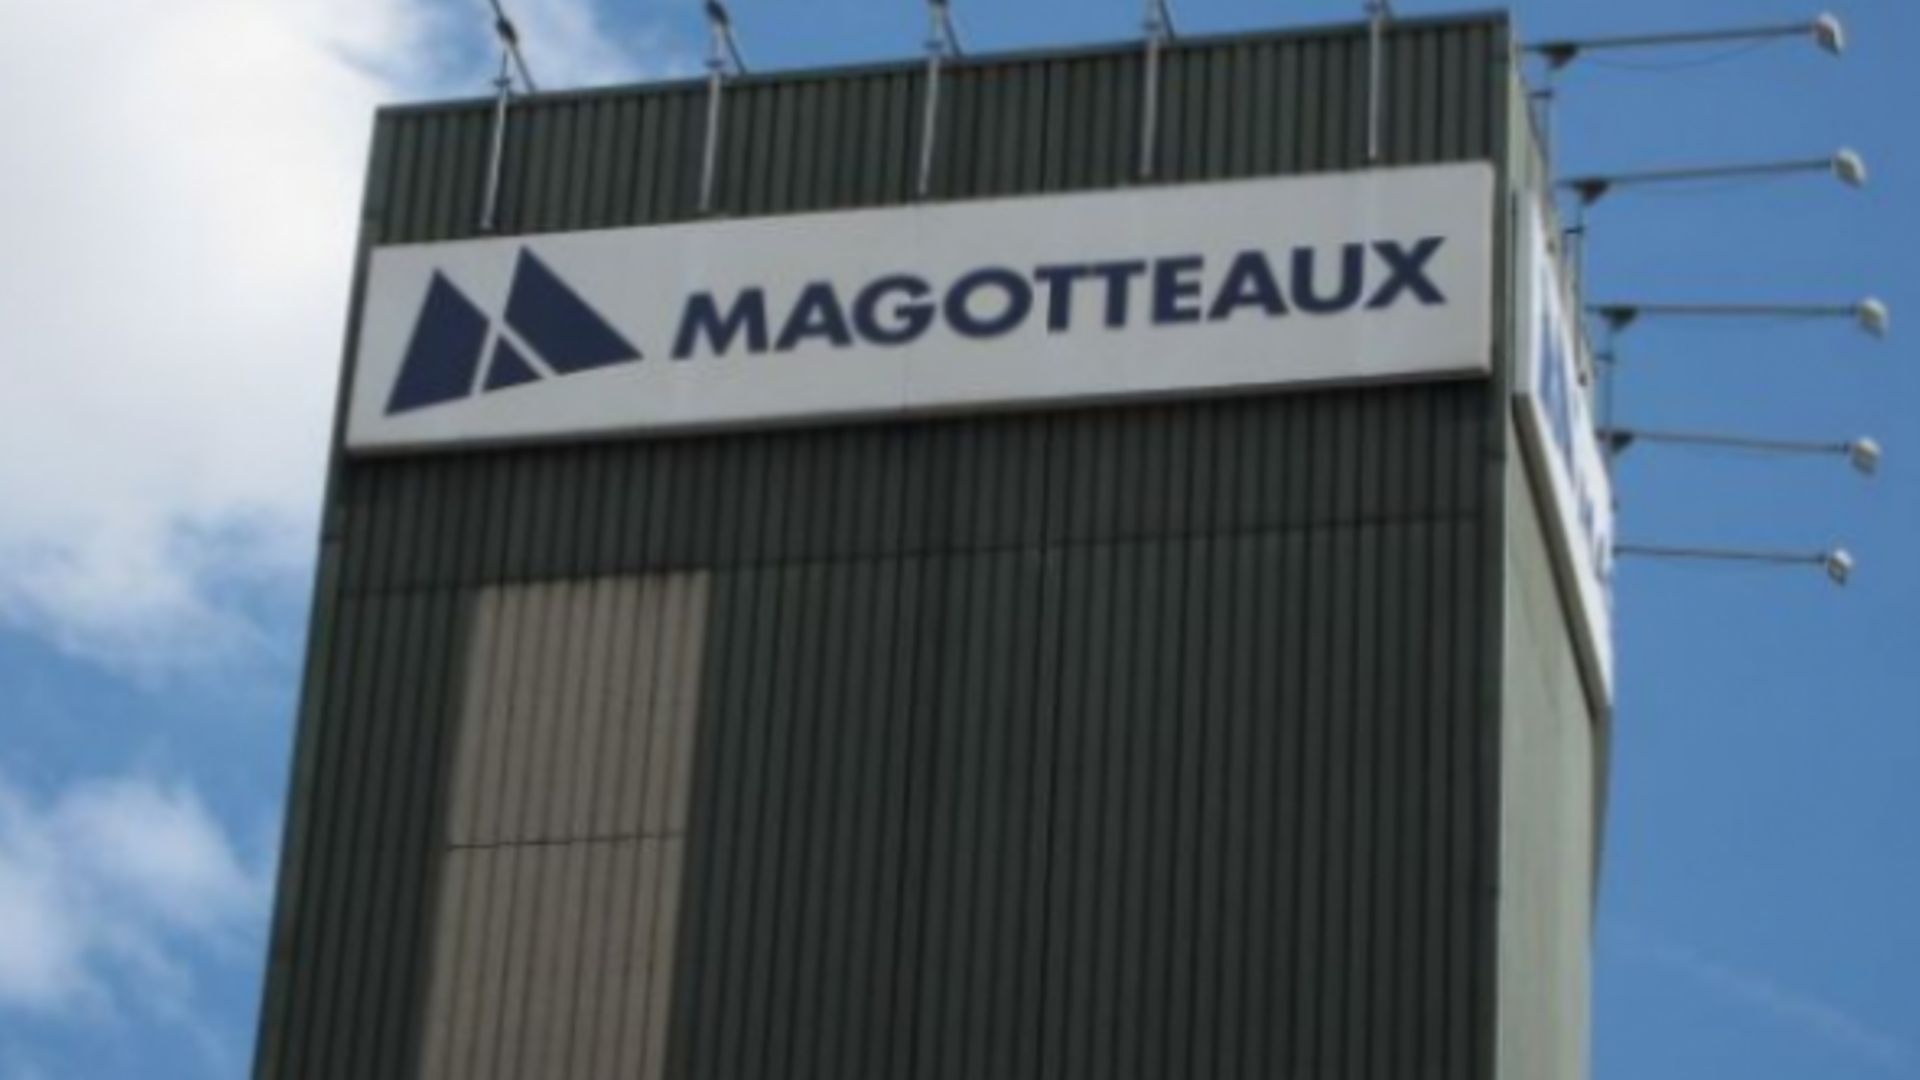 Chez Magotteaux, le personnel est toujours sous le choc suite au suicide d'un employé la semaine dernière.